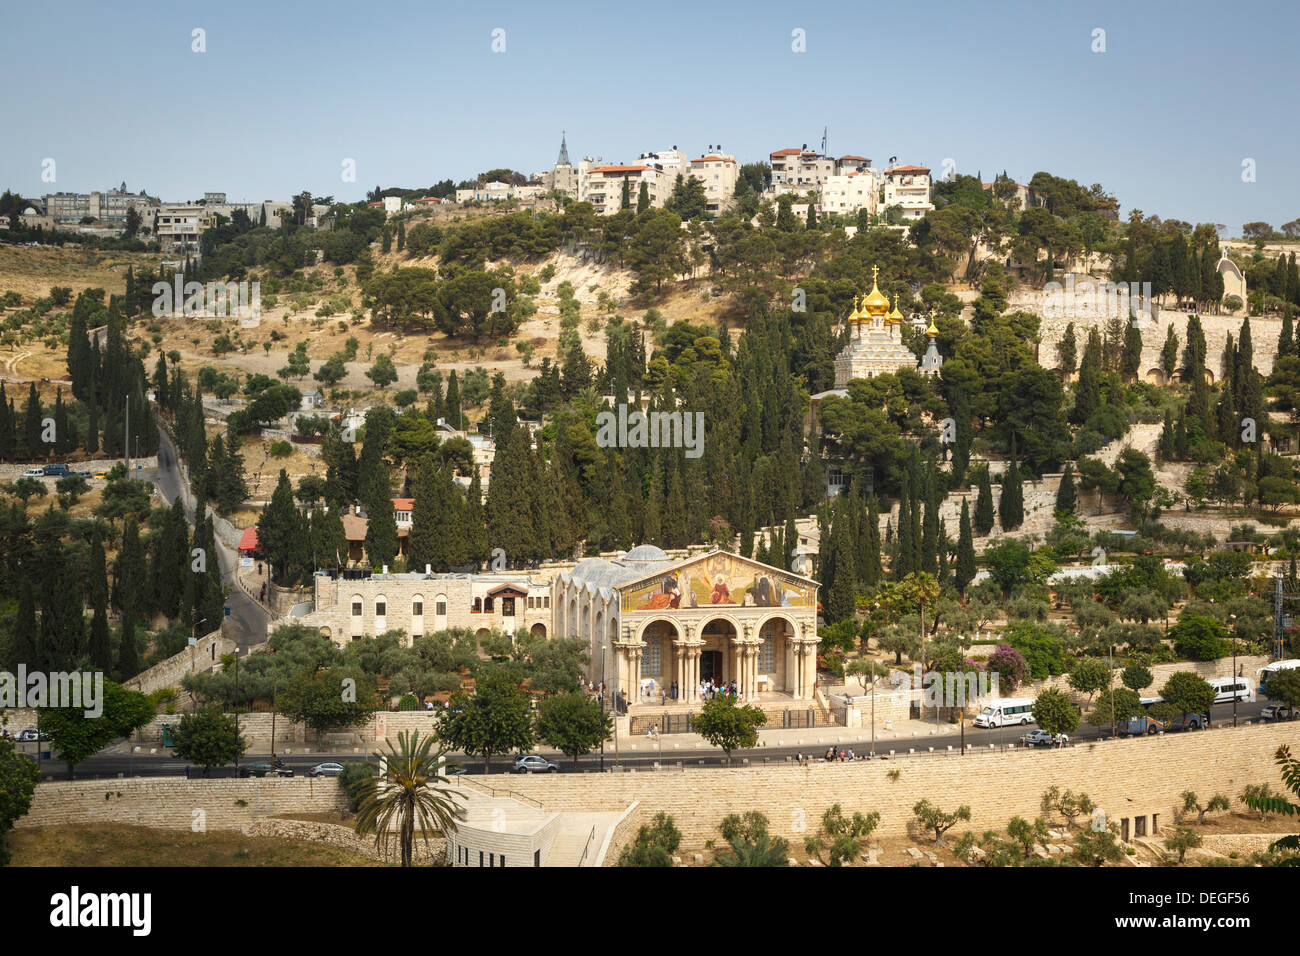 Vue sur la basilique de l'Agonie, Gethsémané, et l'église de Maria Magdalena, Mont des Oliviers, Jérusalem, Israël, Moyen Orient Banque D'Images